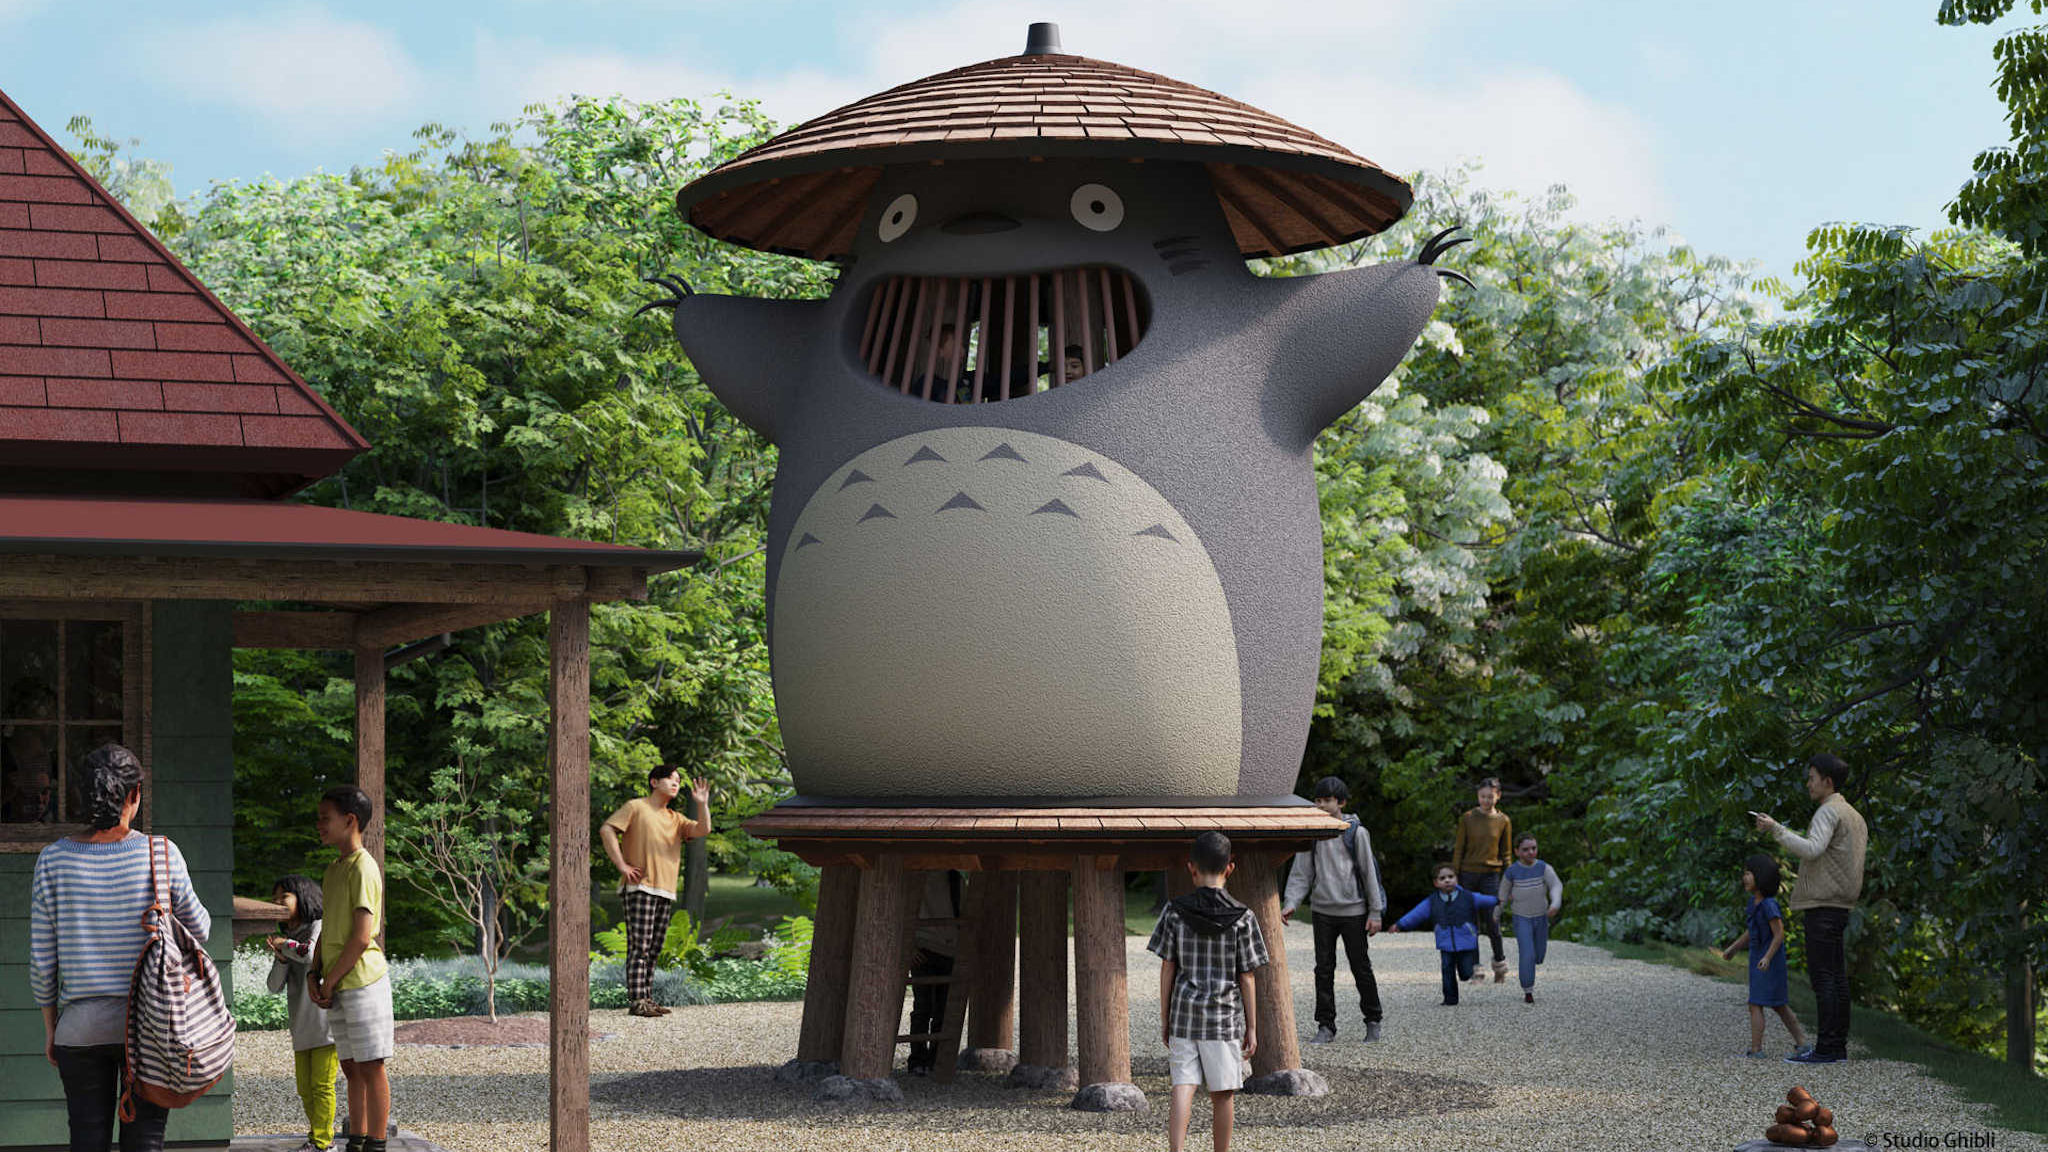 Studio Ghibli’s Ghibli Park is set to open in Japan this November 2022